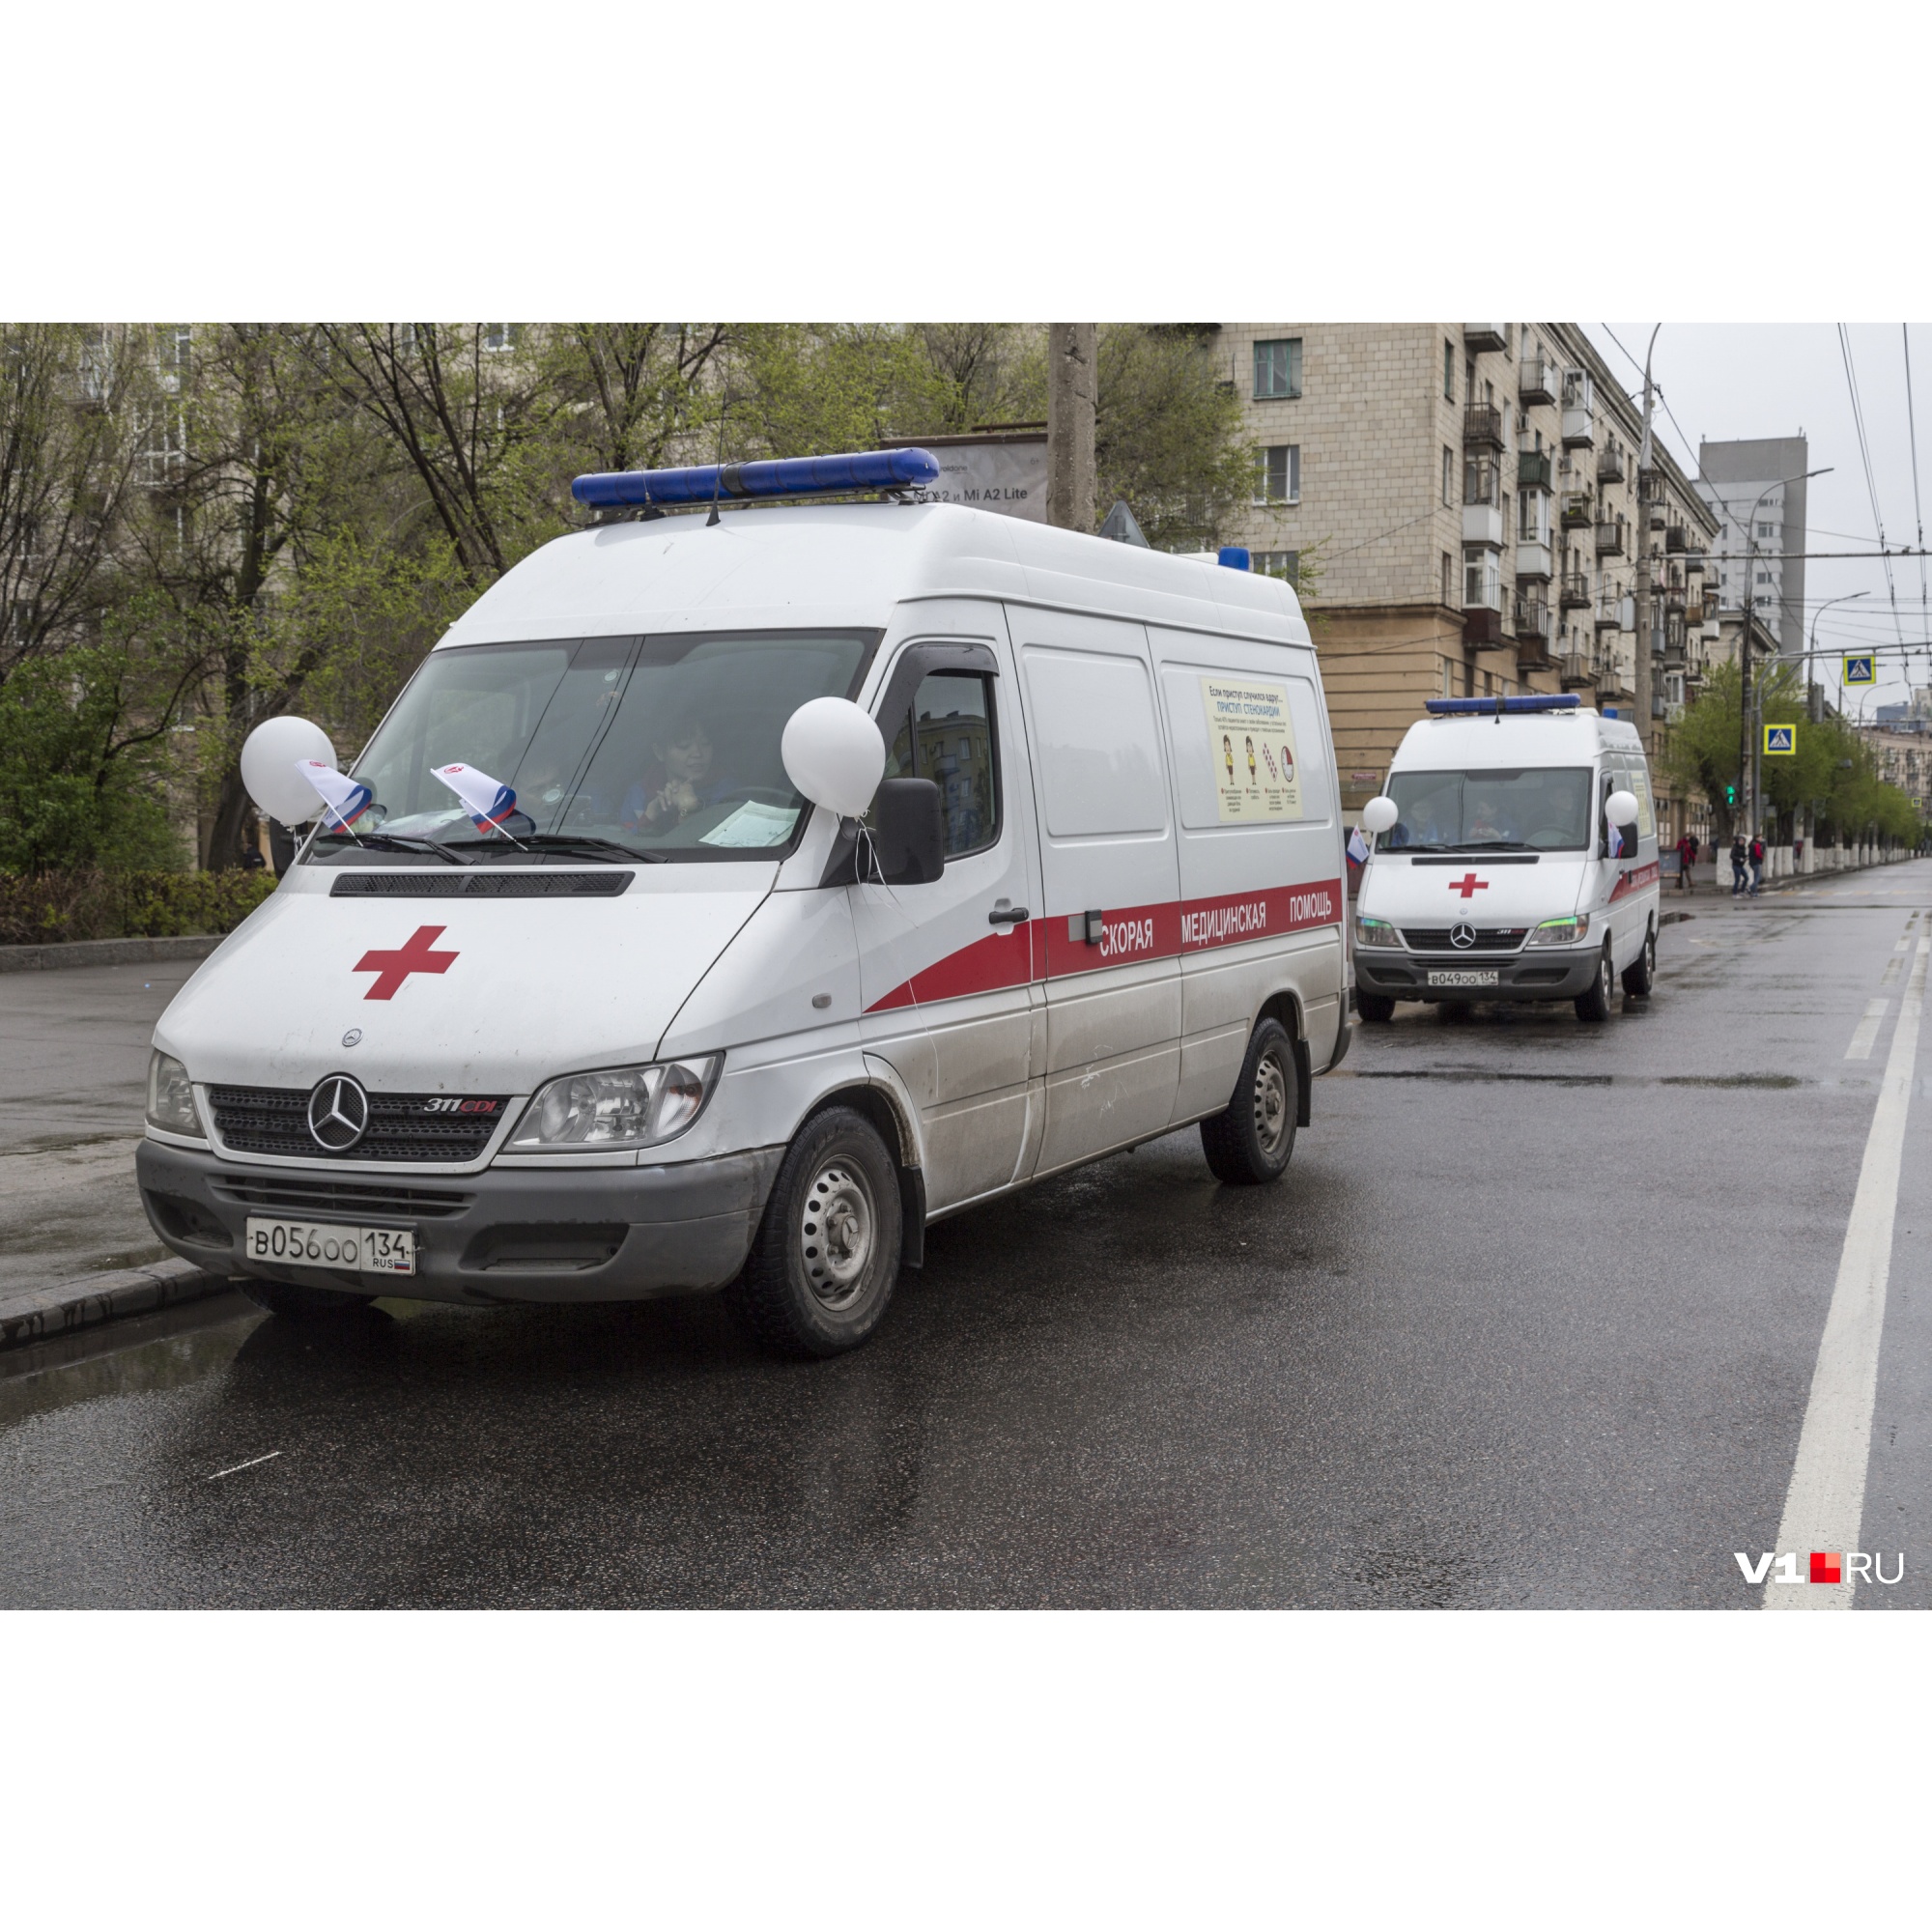 Один умерший, 89 заболевших: в Волгограде и области коронавирус продолжает находить всё новые жертвы